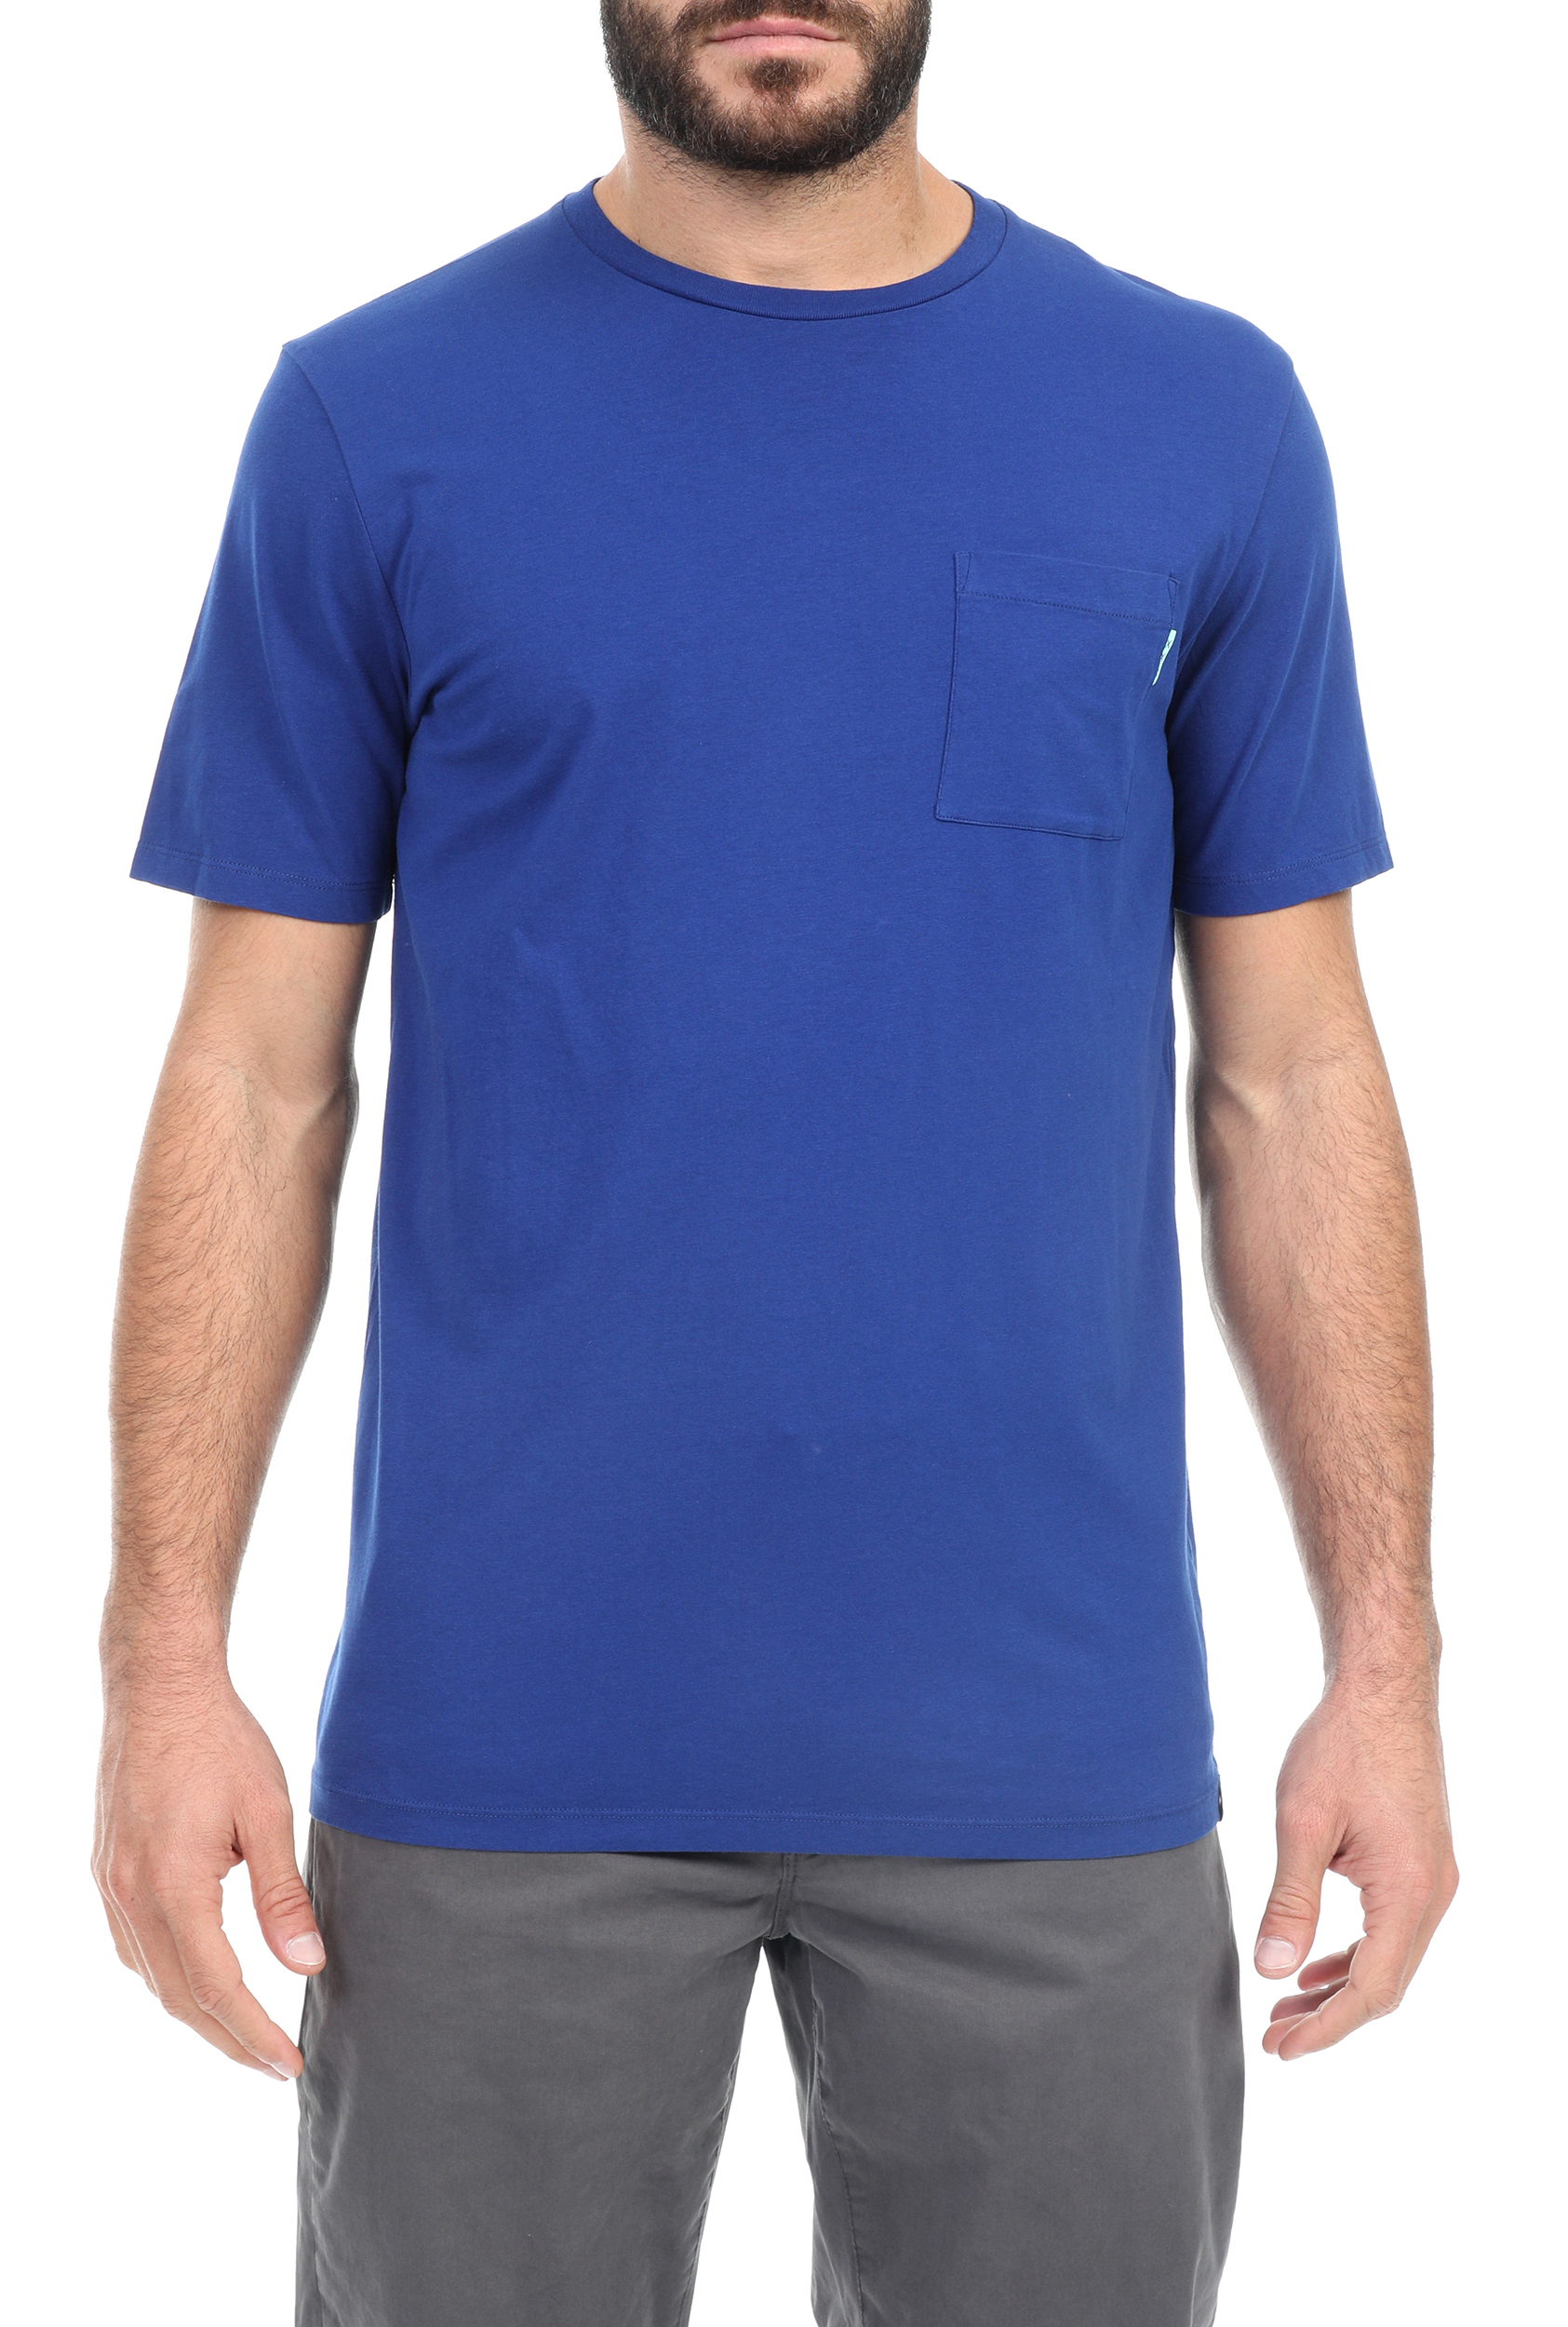 SCOTCH & SODA – Ανδρικό t-shirt SCOTCH & SODA μπλε 1795406.0-2121